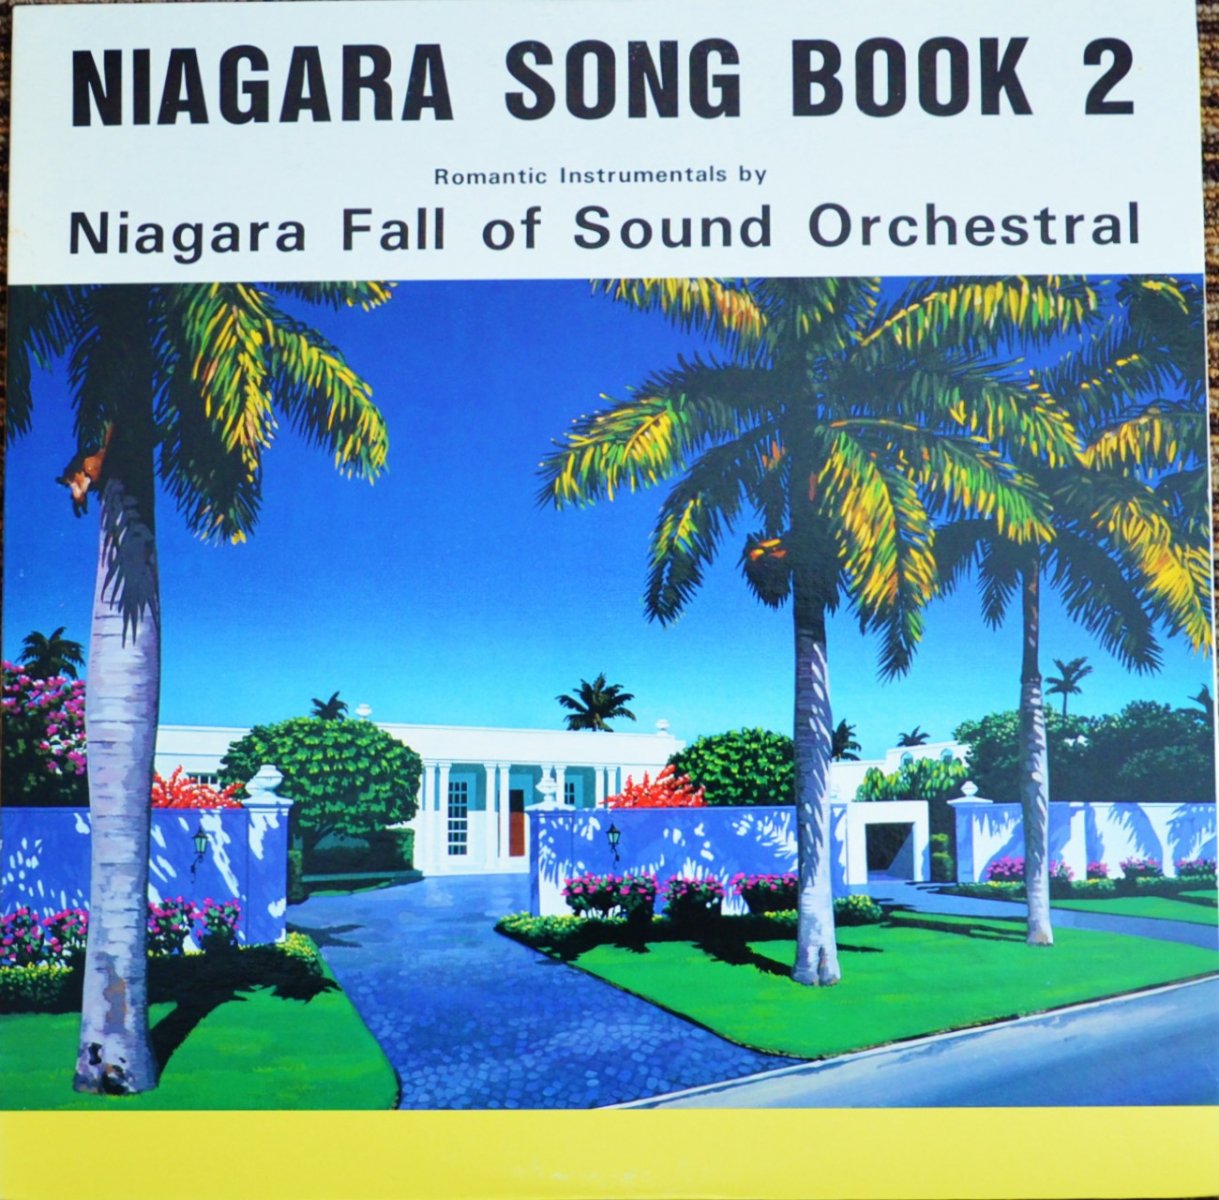 ナイアガラ・フォール・オブ・サウンド・オーケストラ NIAGARA FALL OF SOUND ORCHESTRAL / NIAGARA SONG BOOK 2 (LP)